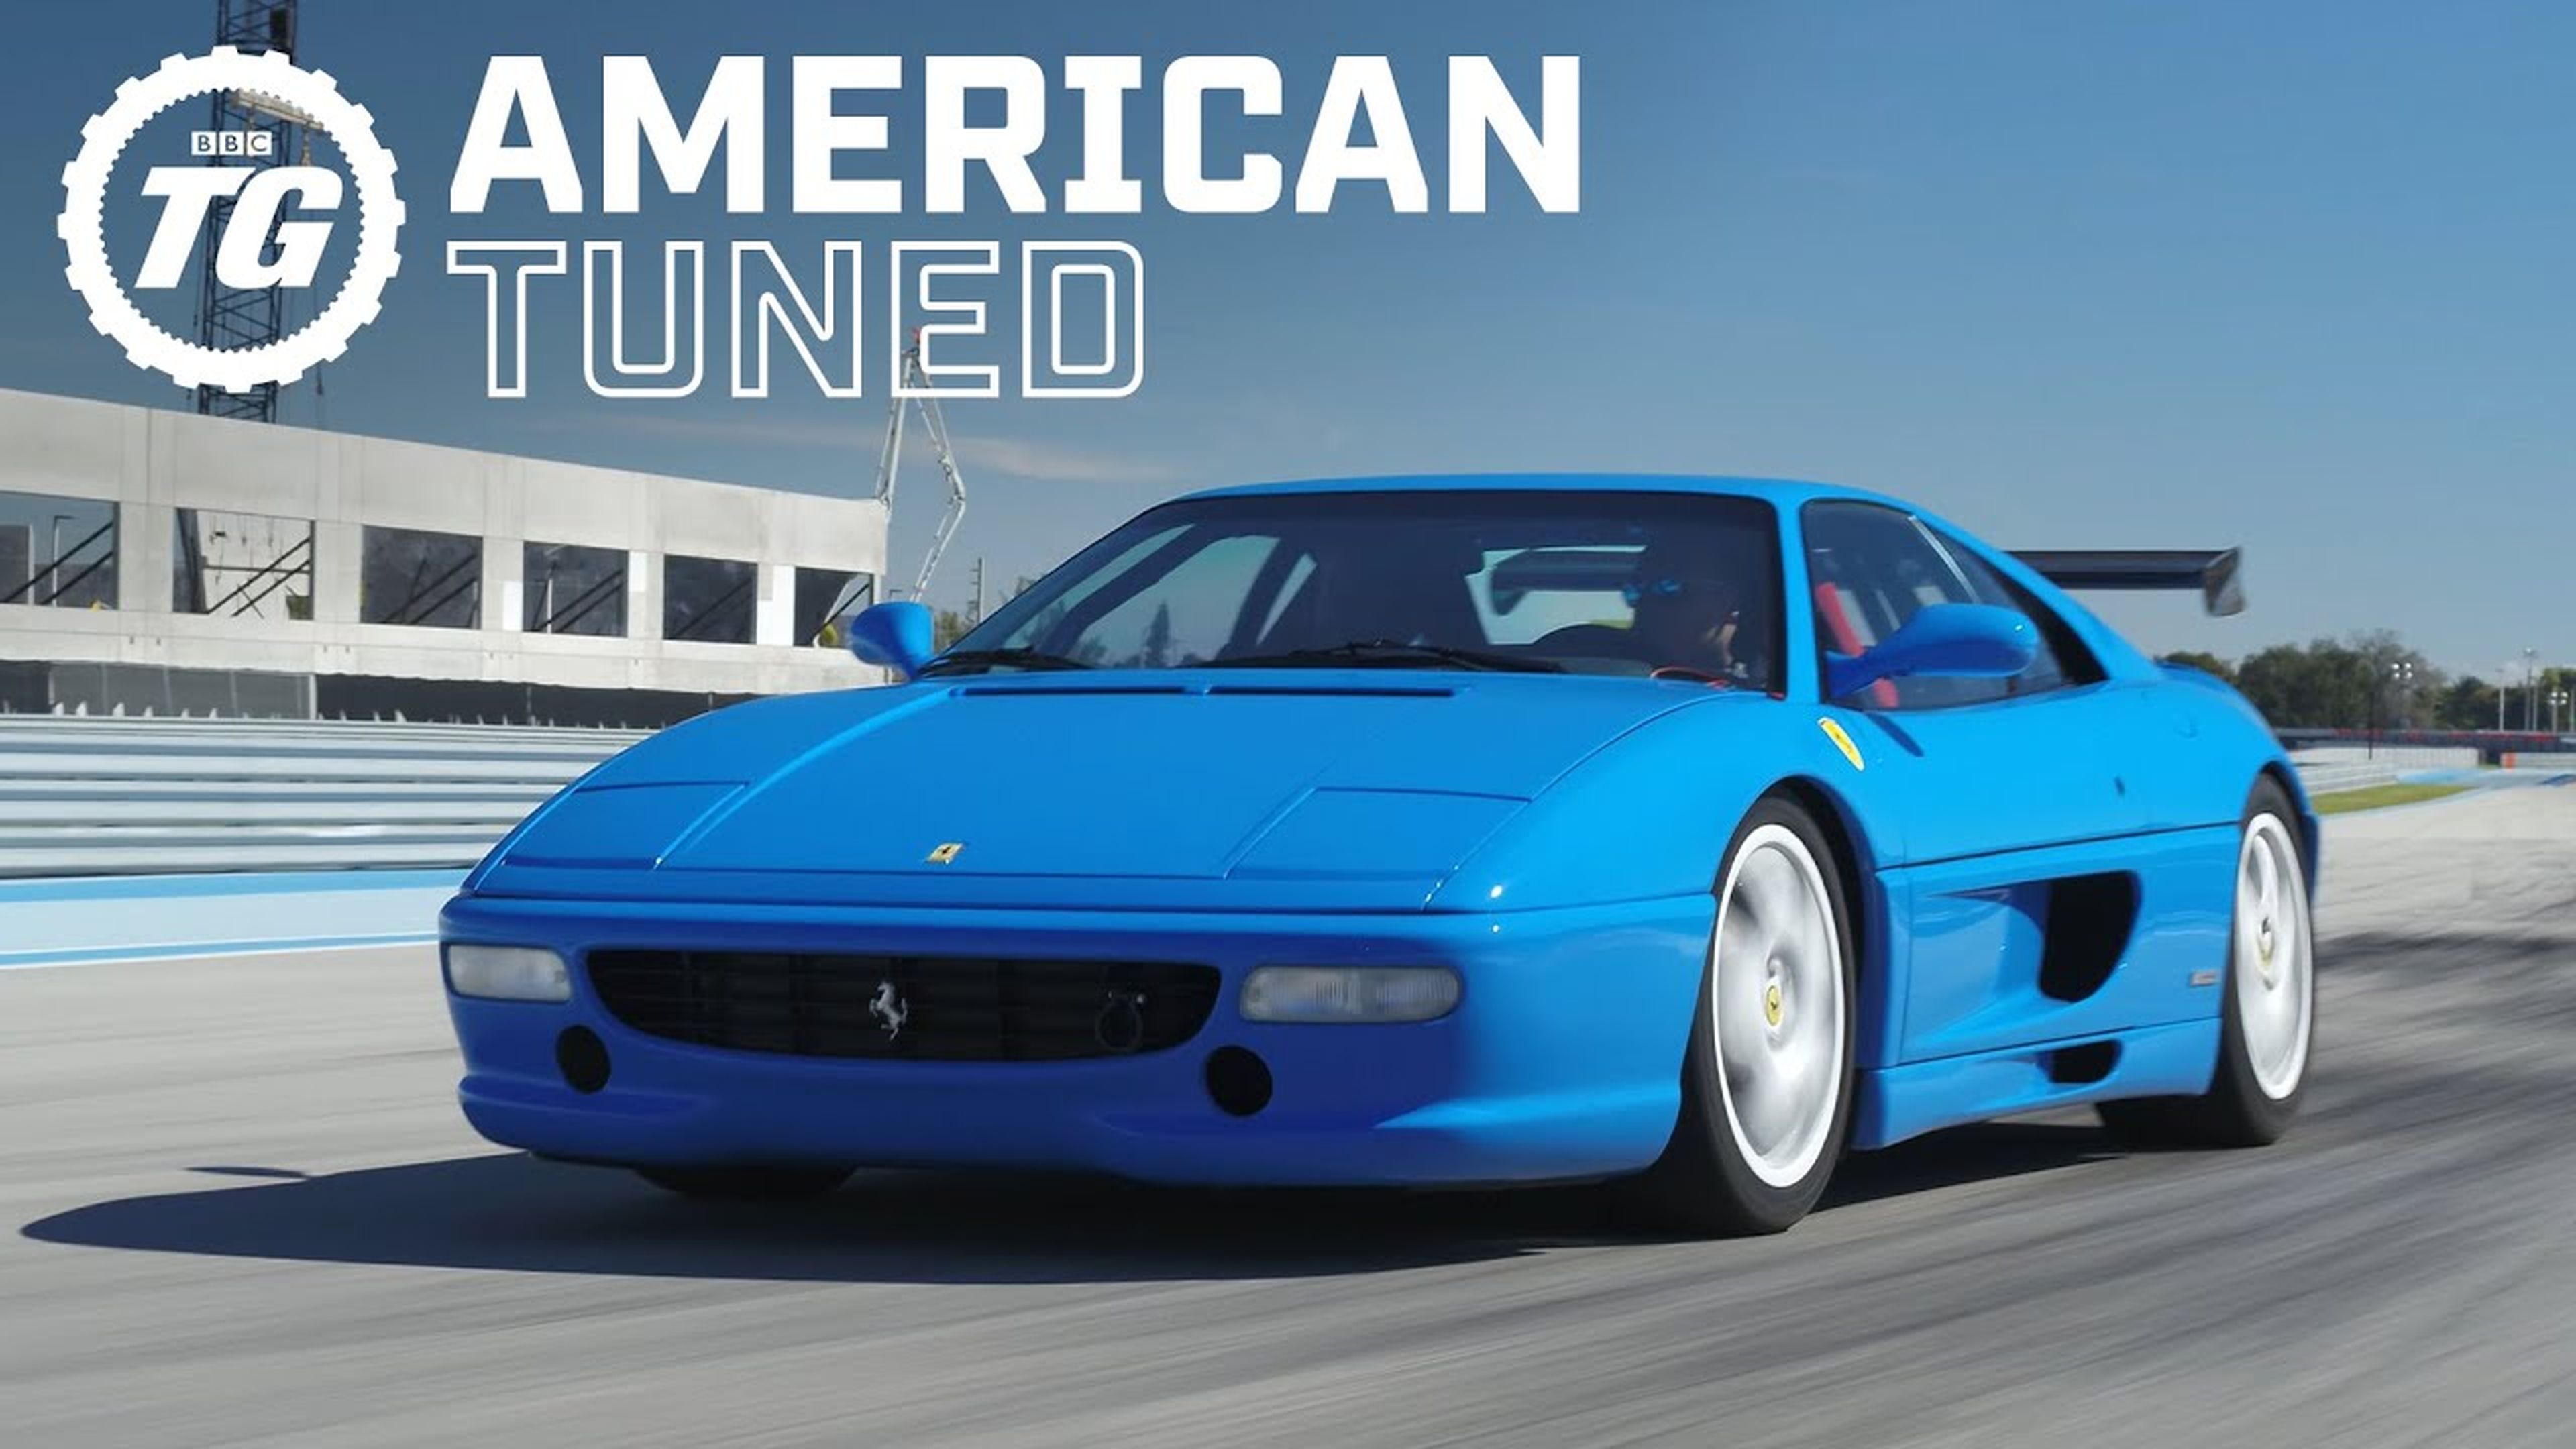 Ferrari F355 Modificata Restomod: Arcade Legend Modified To Perfection? | American Tuned ft Rob Dahm